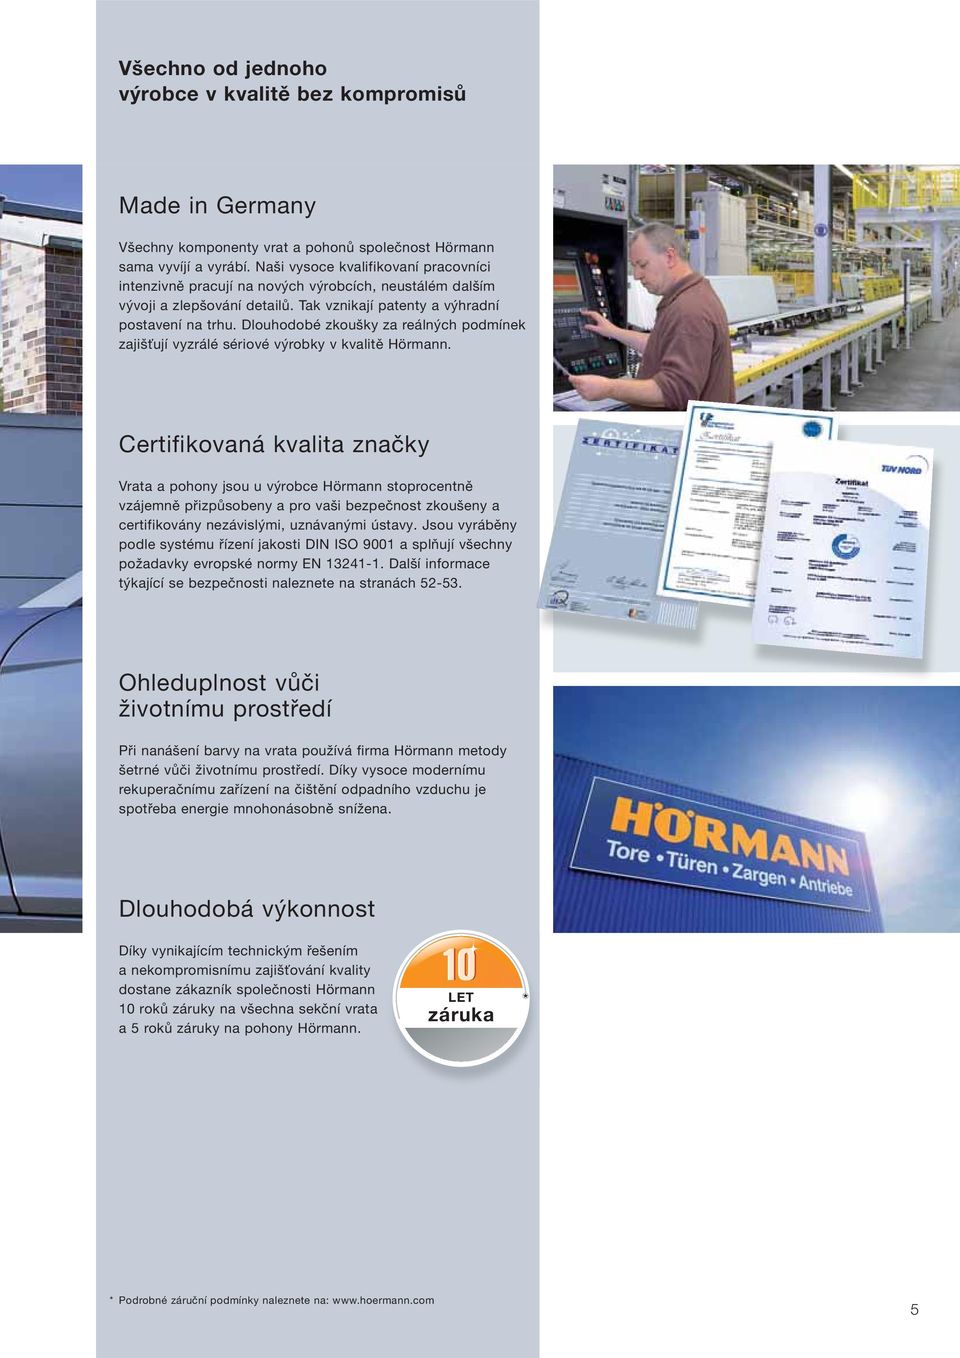 Dlouhodobé zkoušky za reálných podmínek zajišťují vyzrálé sériové výrobky v kvalitě Hörmann.